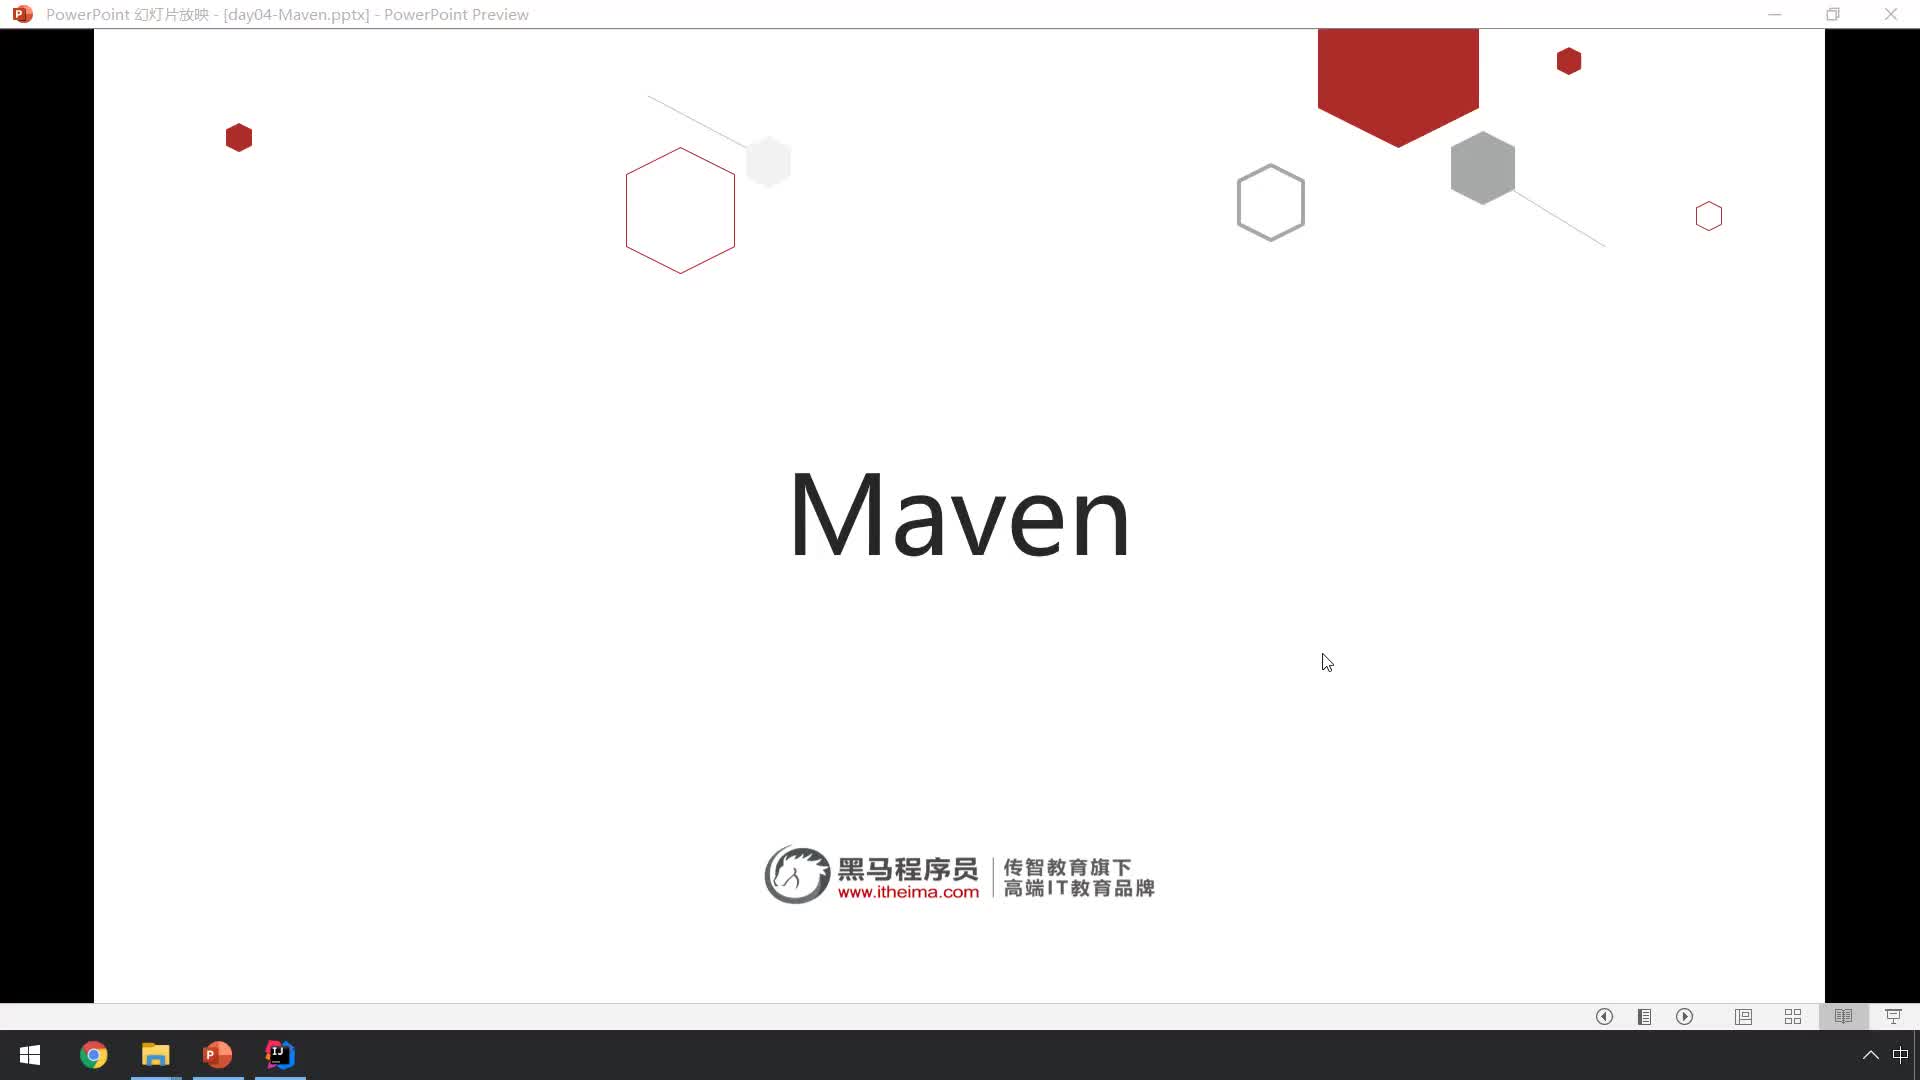 Maven-01-Maven概述